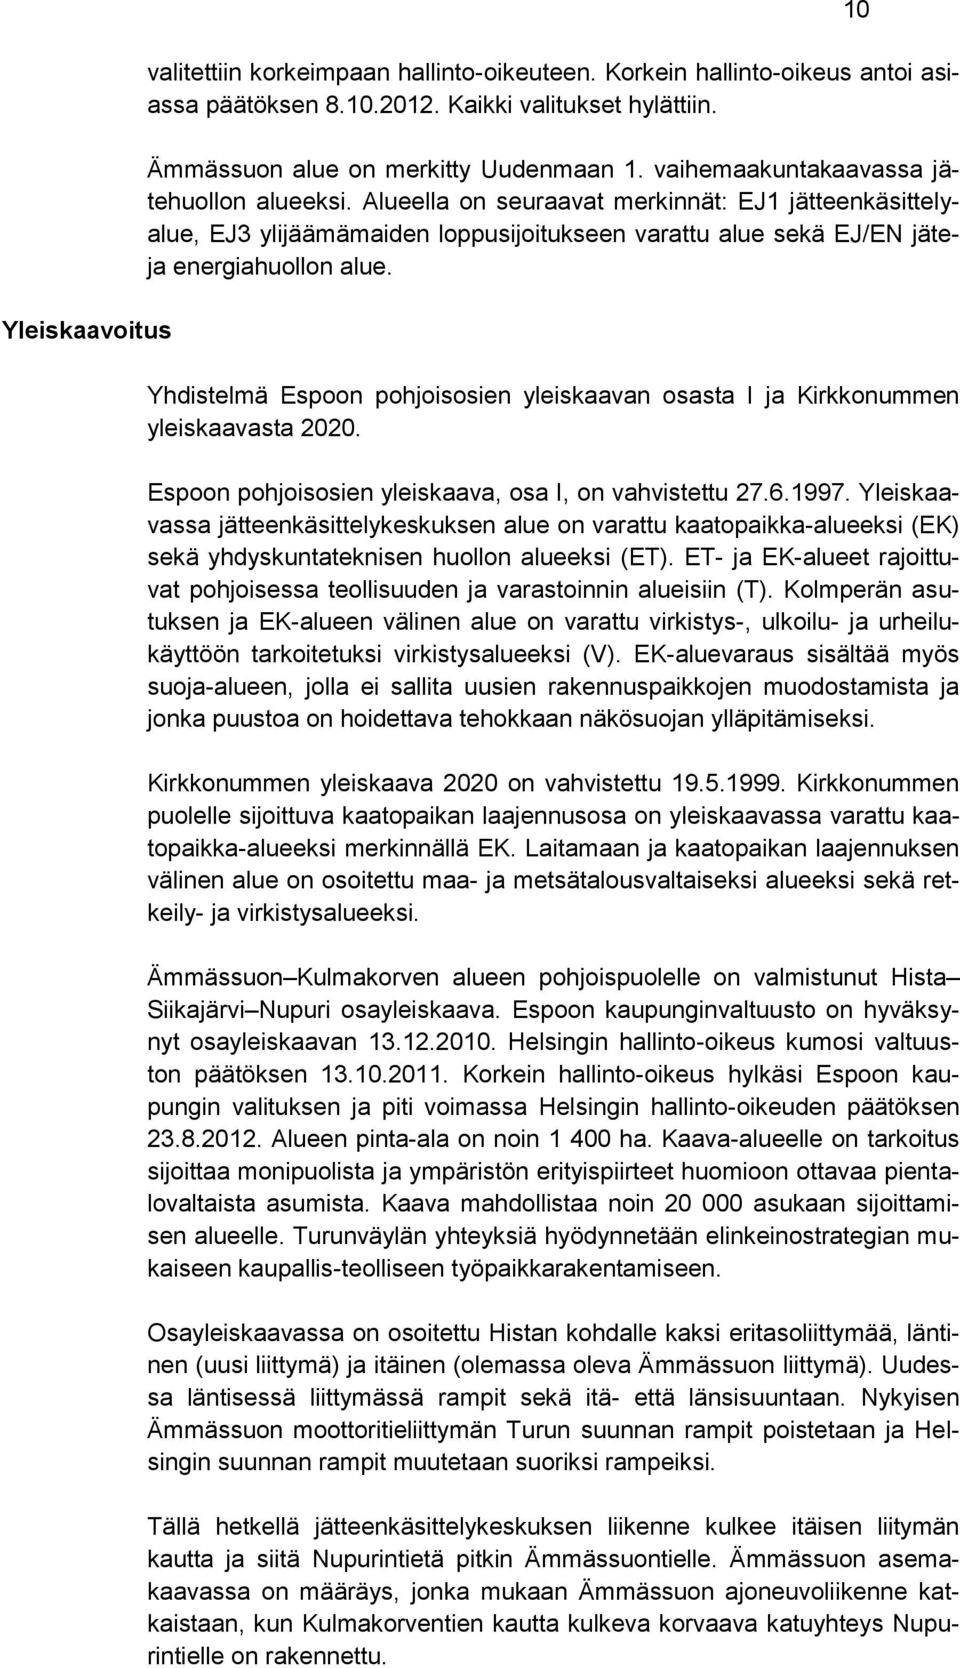 Yhdistelmä Espoon pohjoisosien yleiskaavan osasta I ja Kirkkonummen yleiskaavasta 2020. Espoon pohjoisosien yleiskaava, osa I, on vahvistettu 27.6.1997.